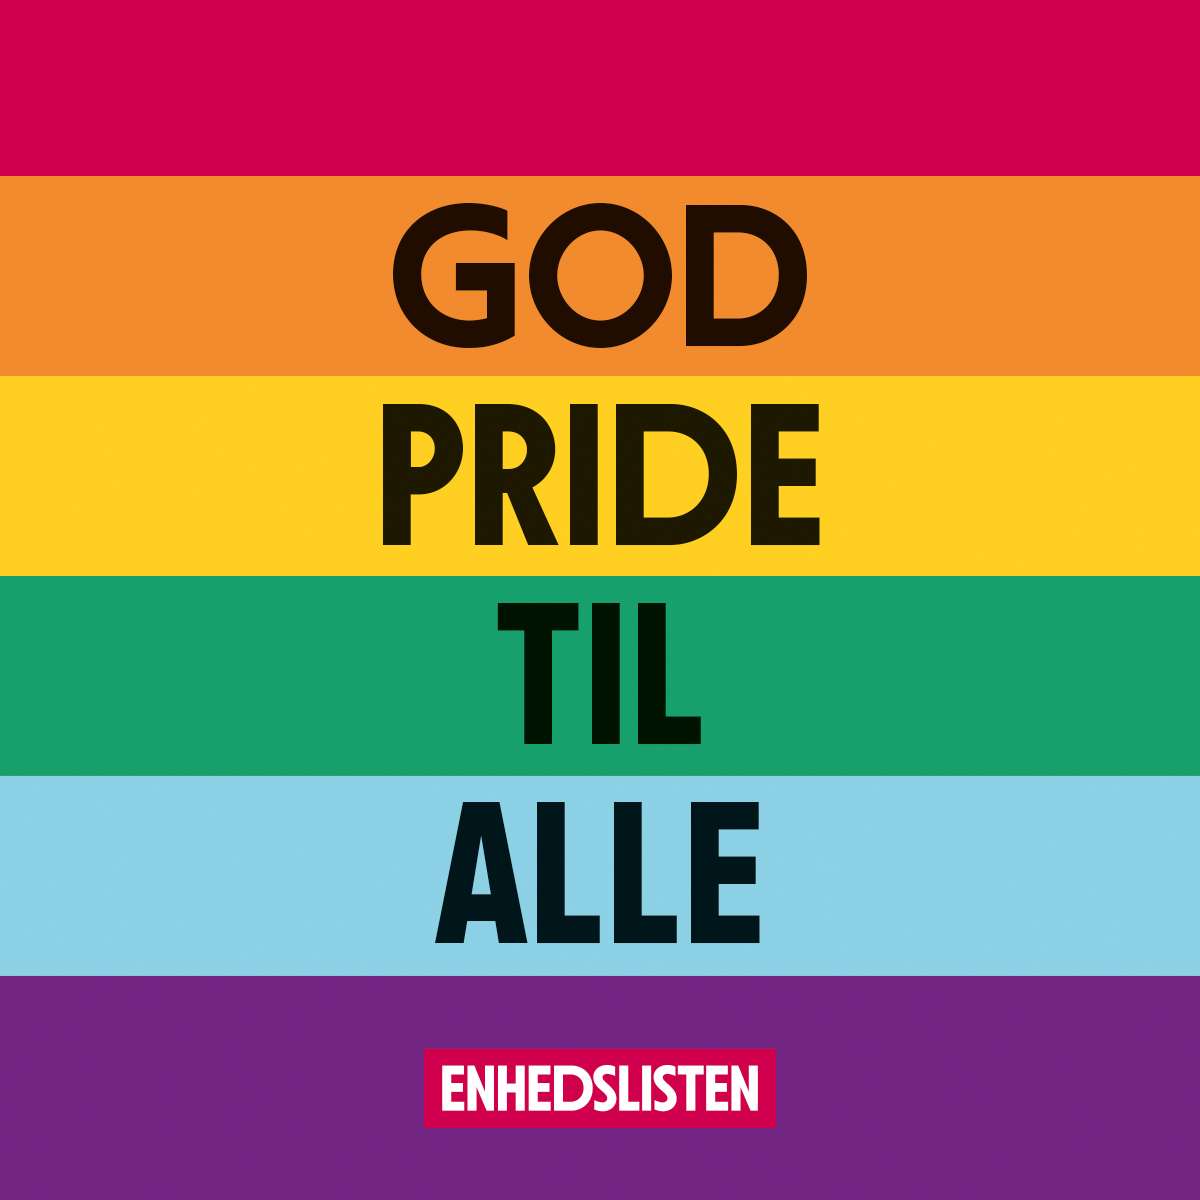 Pride2019 God pride